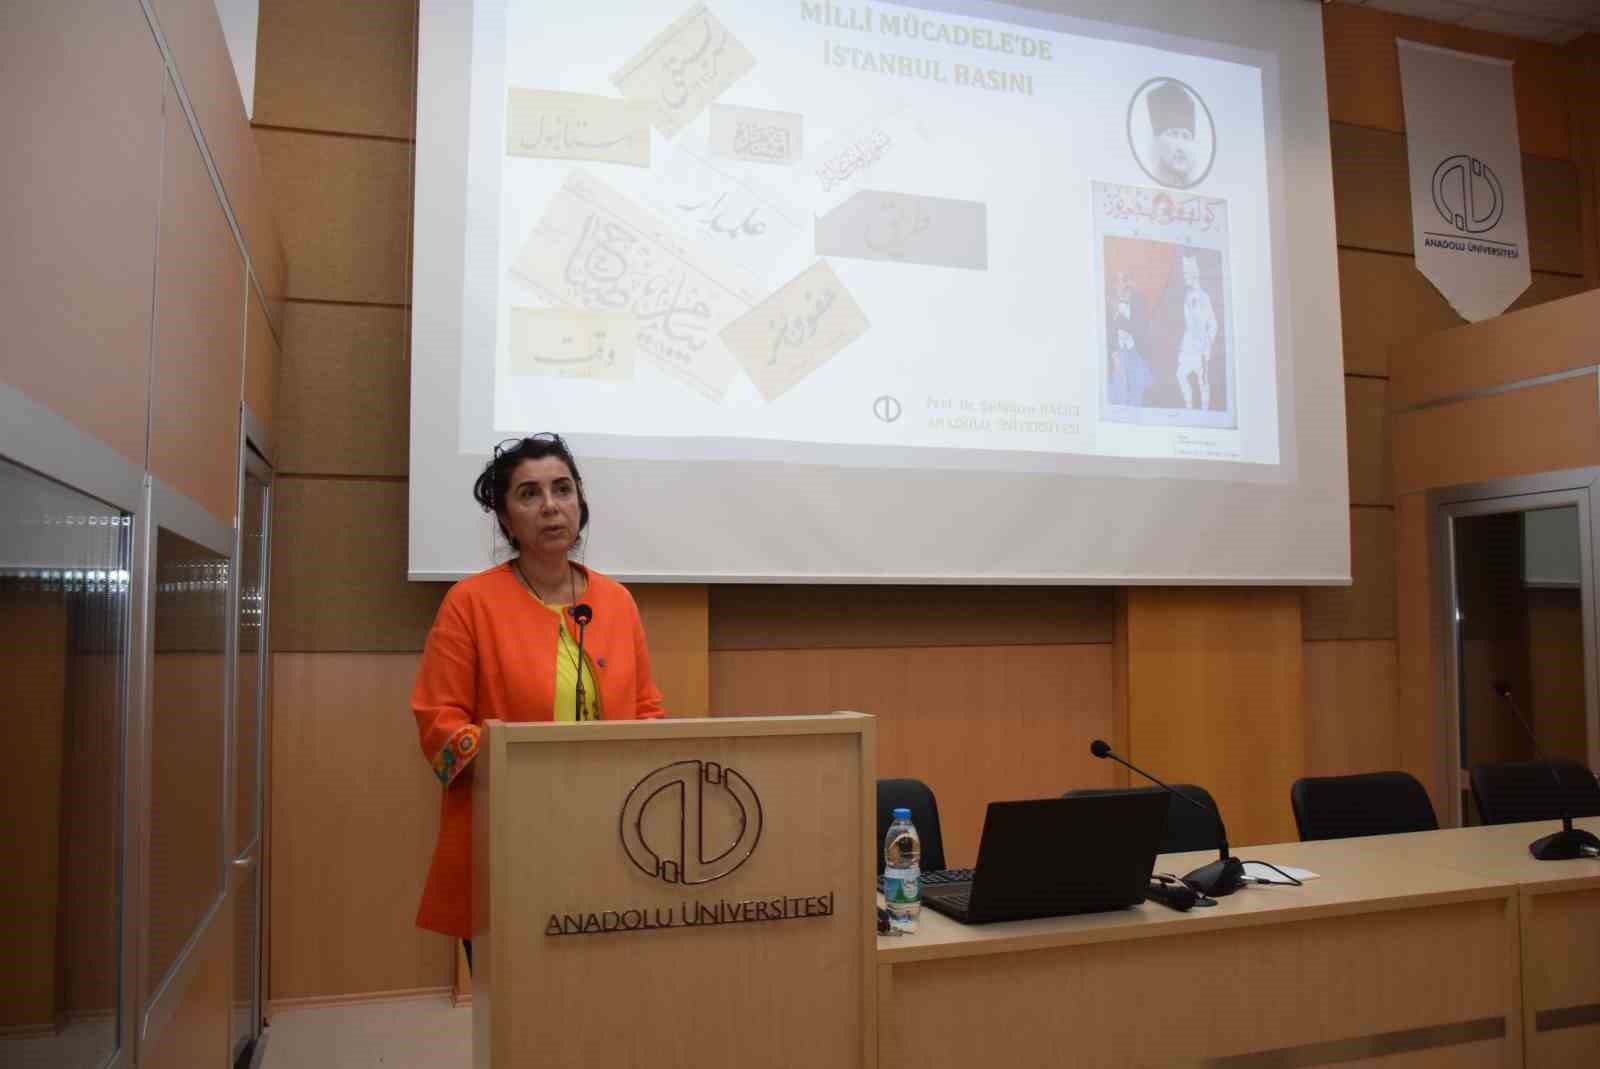 Anadolu Üniversitesi’nde ‘Milli Mücadele’de İstanbul Basını’ konferansı